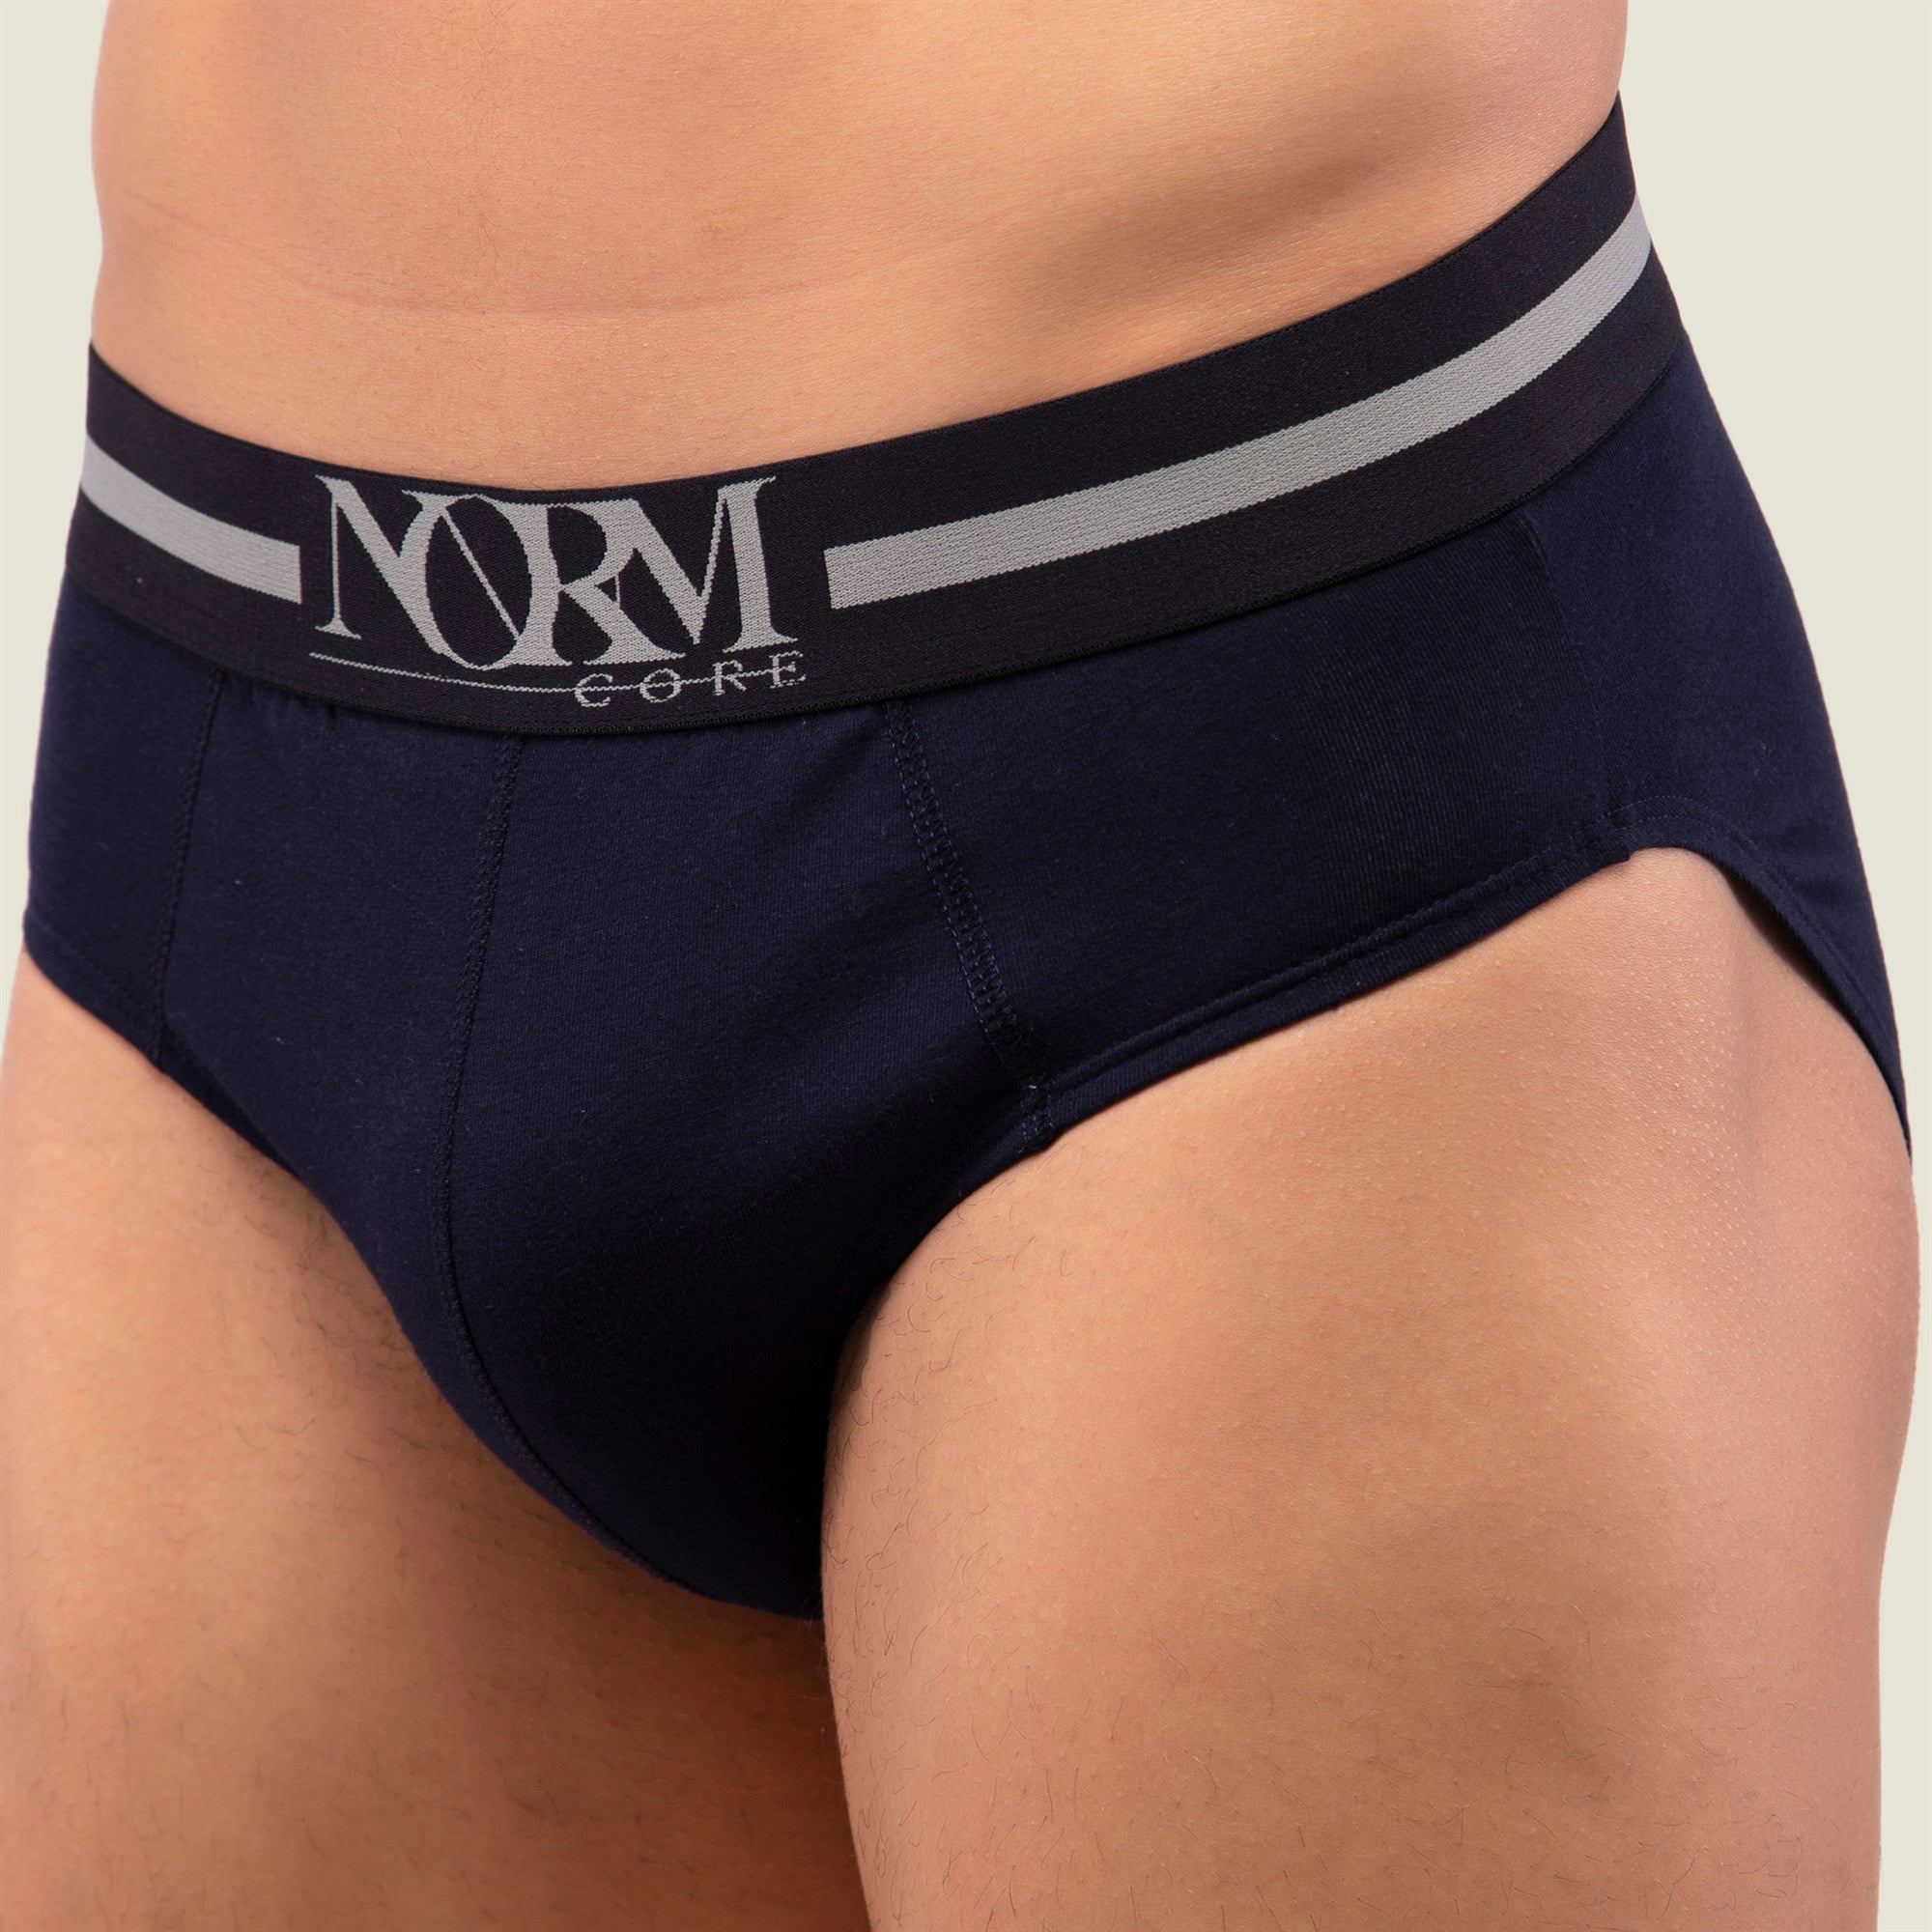 Normcore Cotton Innerwear - Navy Blue Brief with Black Waistband Underwear